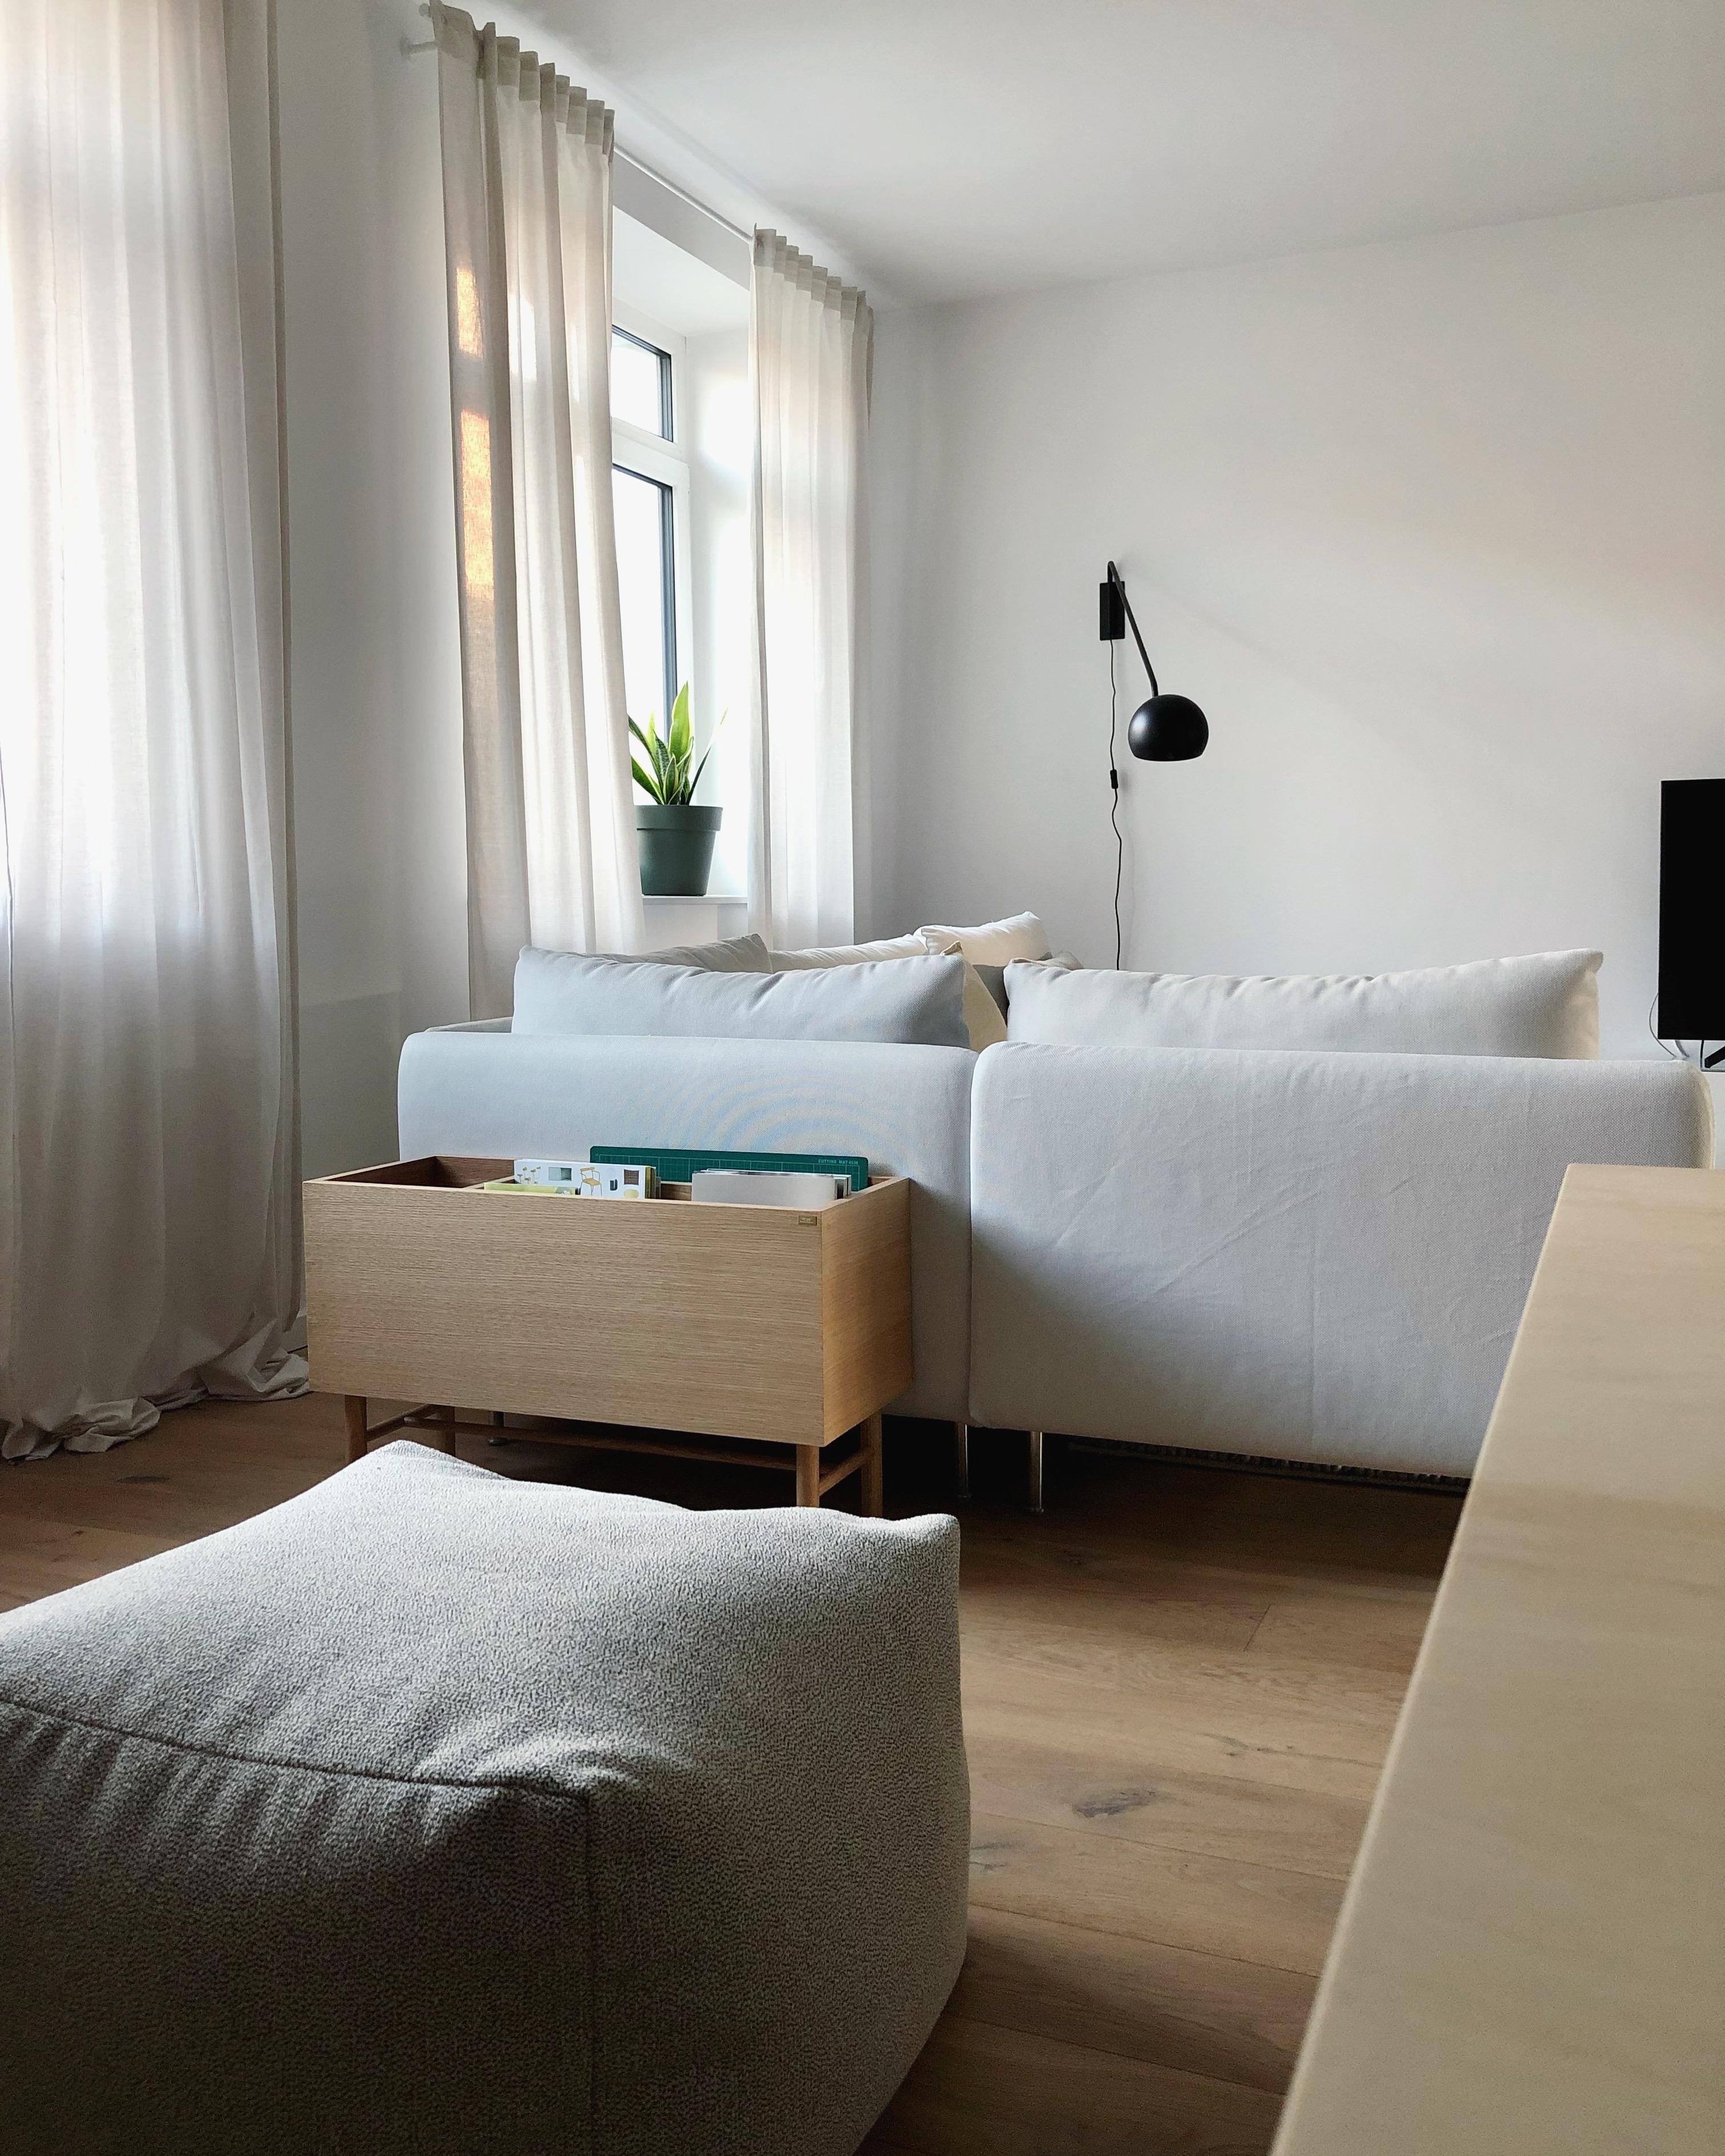 #wohnzimmer #livingroom #couch #sofa #whiteinterior #interior #minimalism #home #couchstyle #wohnen #pouf